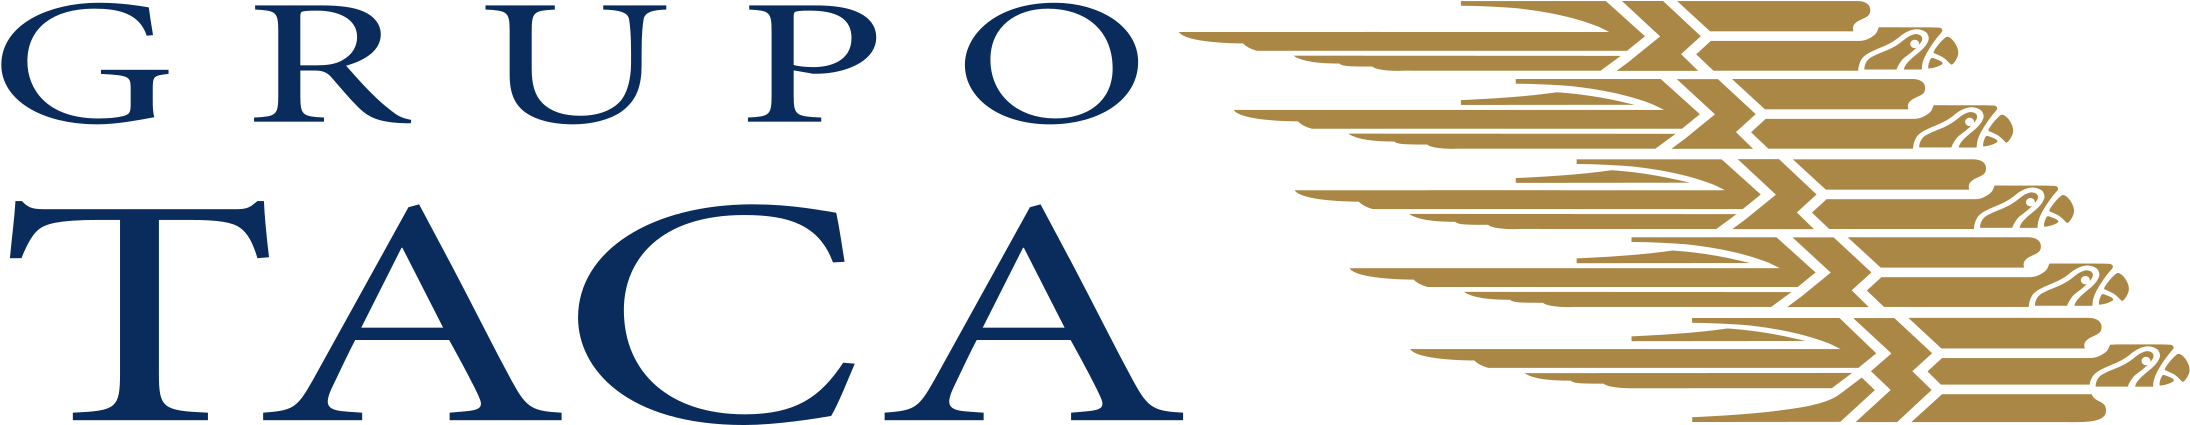 Grupo Taca Air Lines Logo Png Transparent - Grupo Taca (2400x2400), Png Download